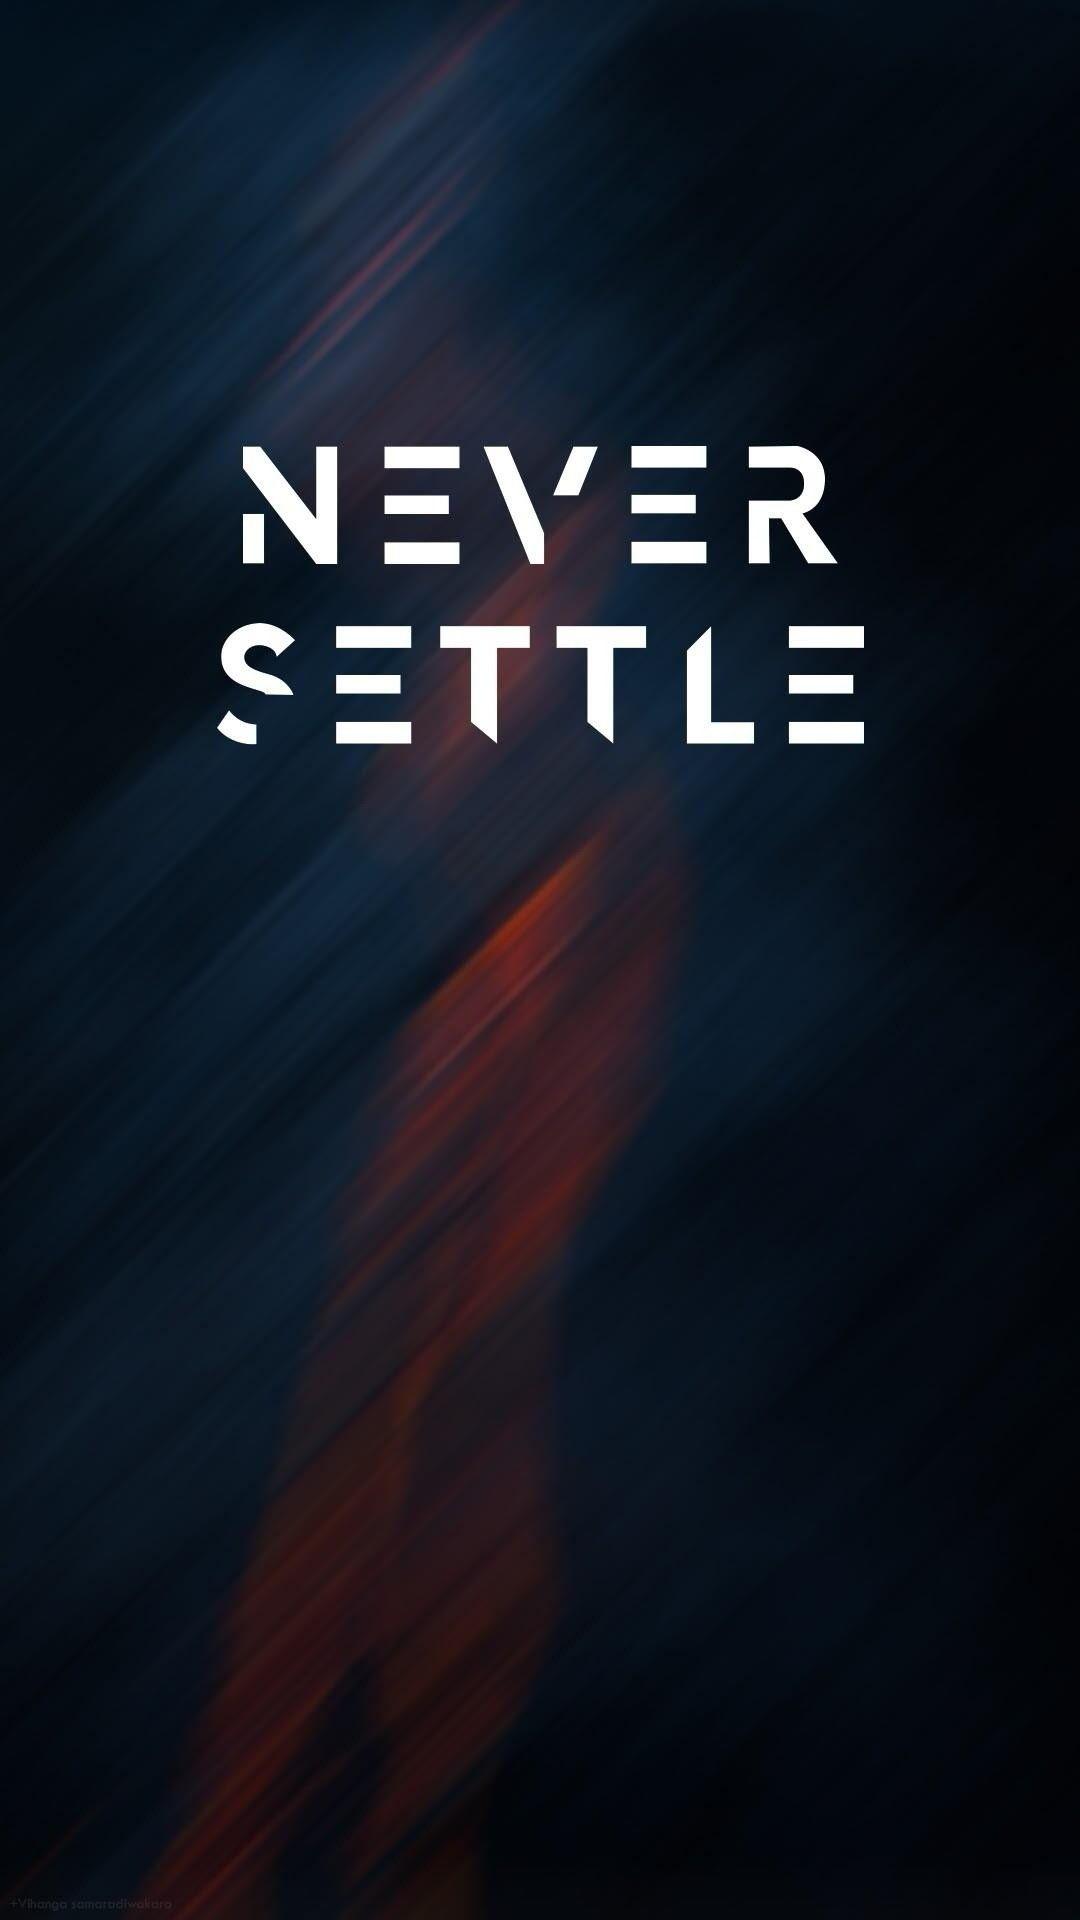 Never settle. Oneplus wallpaper, Never settle wallpaper, HD